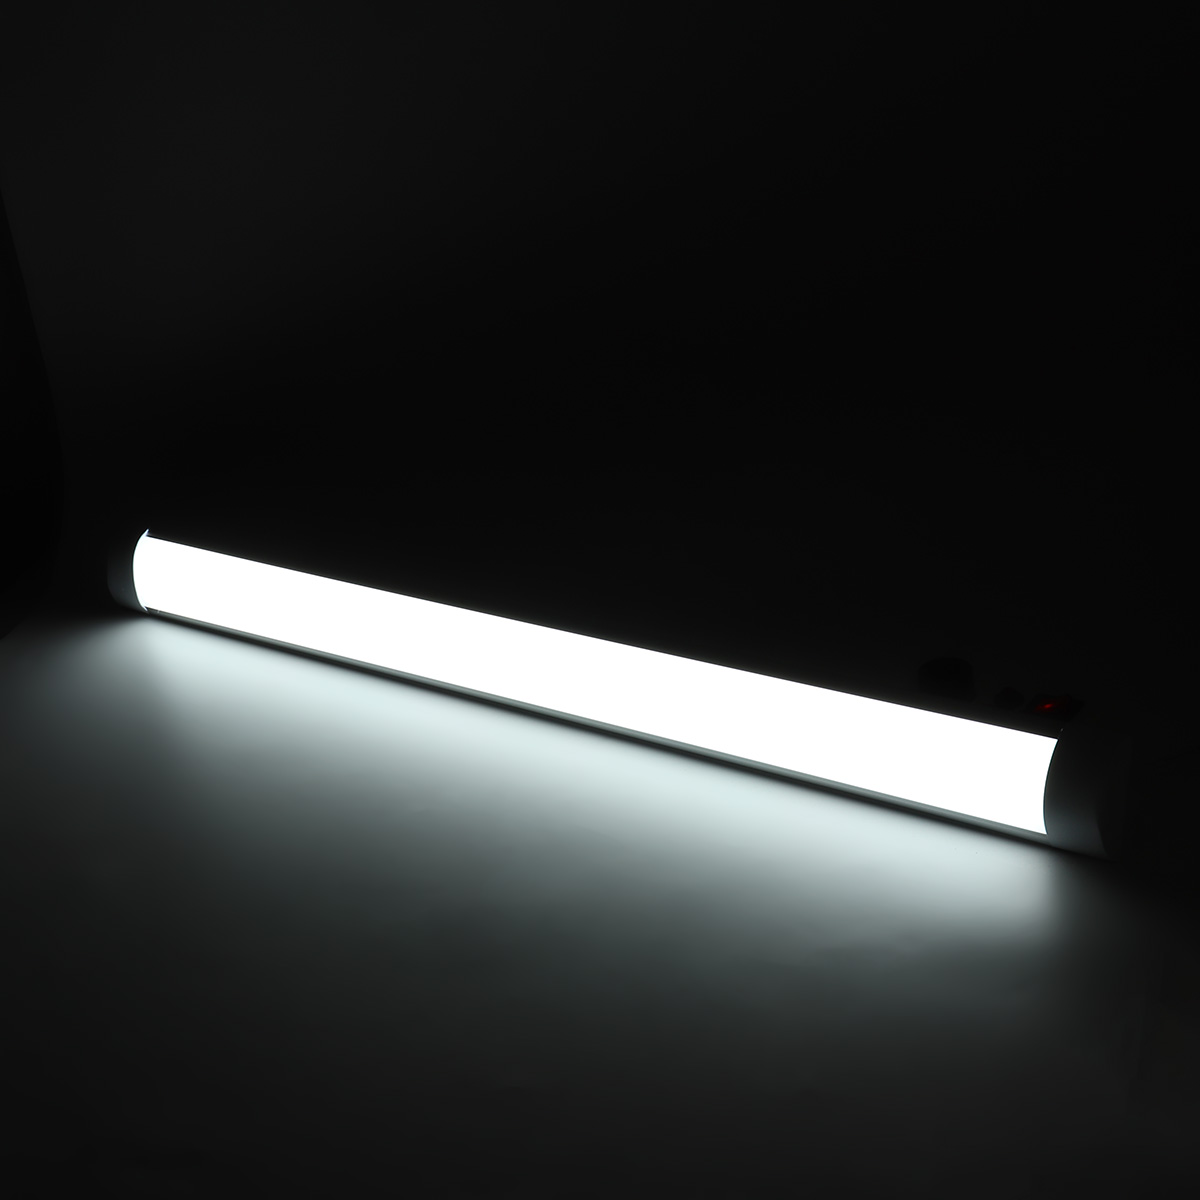 LED Batten Tube Light 2FT 3FT 4FT Linear Slimline Panel Ceiling Lights Wall Lamp 